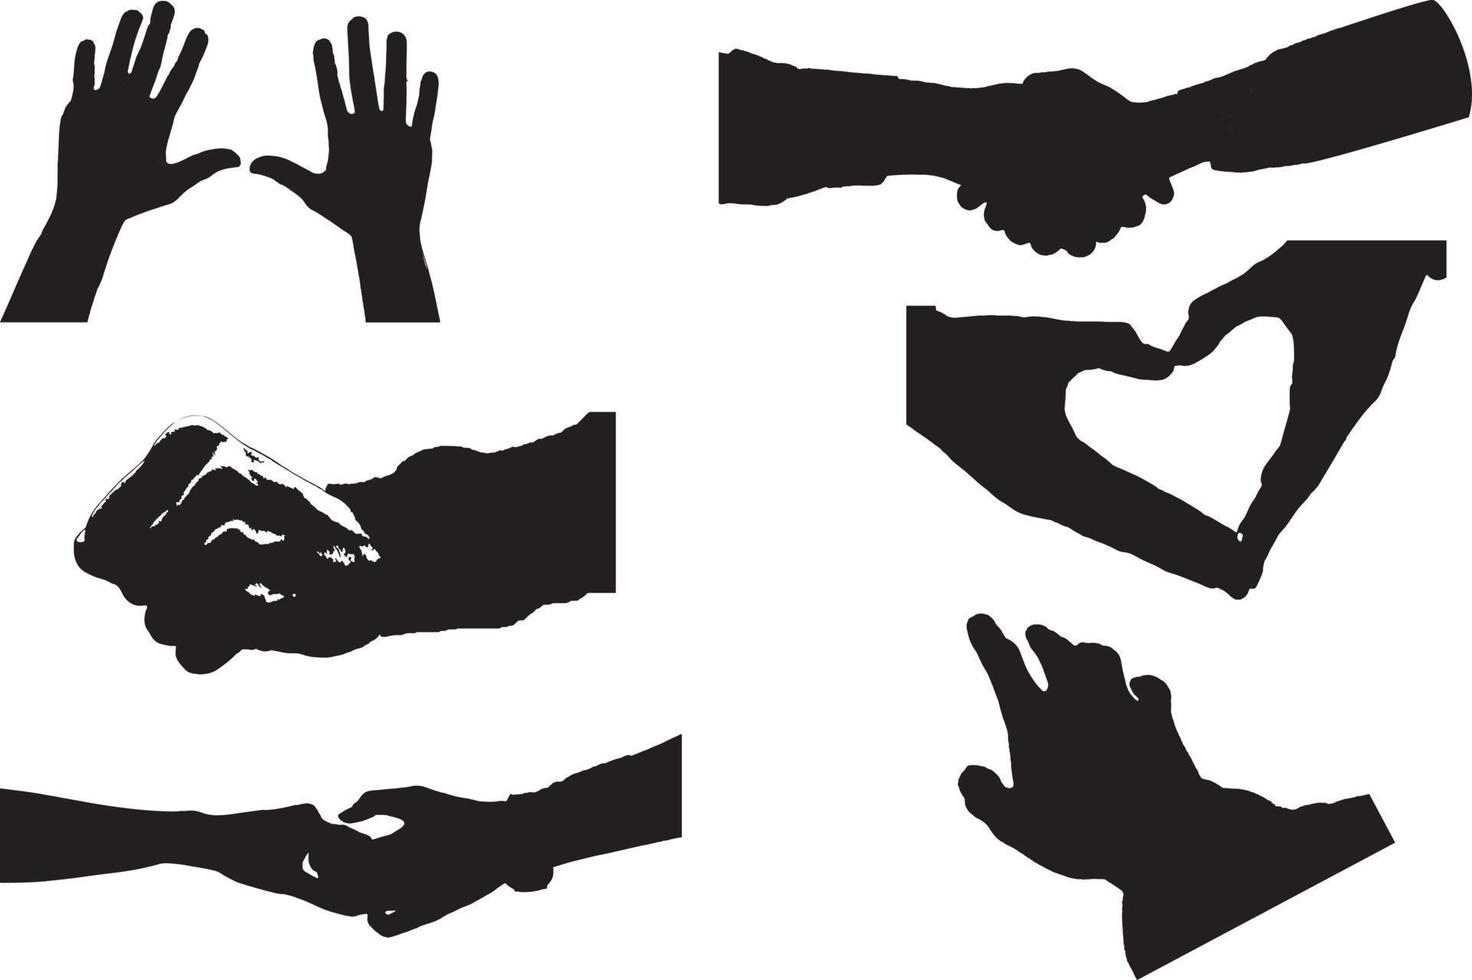 conjunto de várias mãos de mulher silhueta negra. coleção de vetores de mãos femininas de diferentes gestos. estilo minimalista moderno para logotipos, estampas, designs, ilustrações.